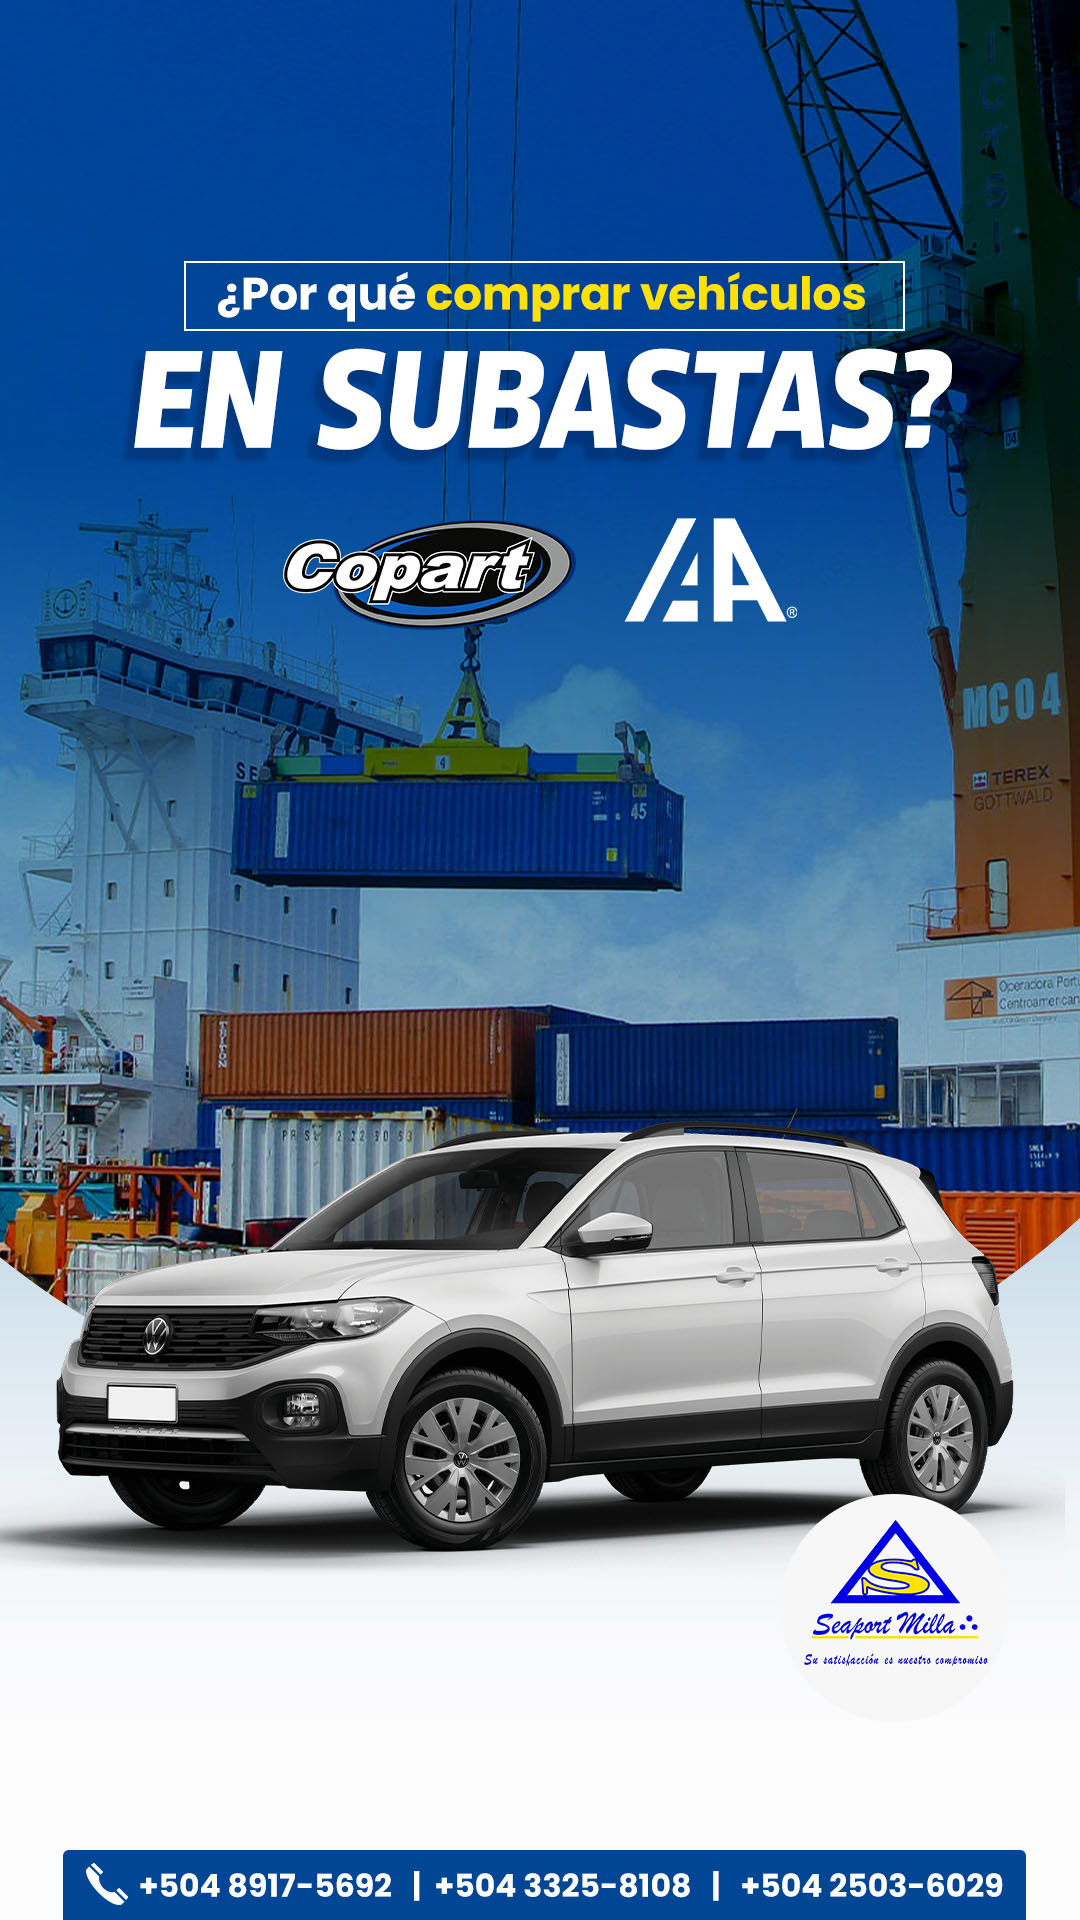 Aduana agente aduanal Copart diseño gráfico IAA redes sociales subasta vehiculo